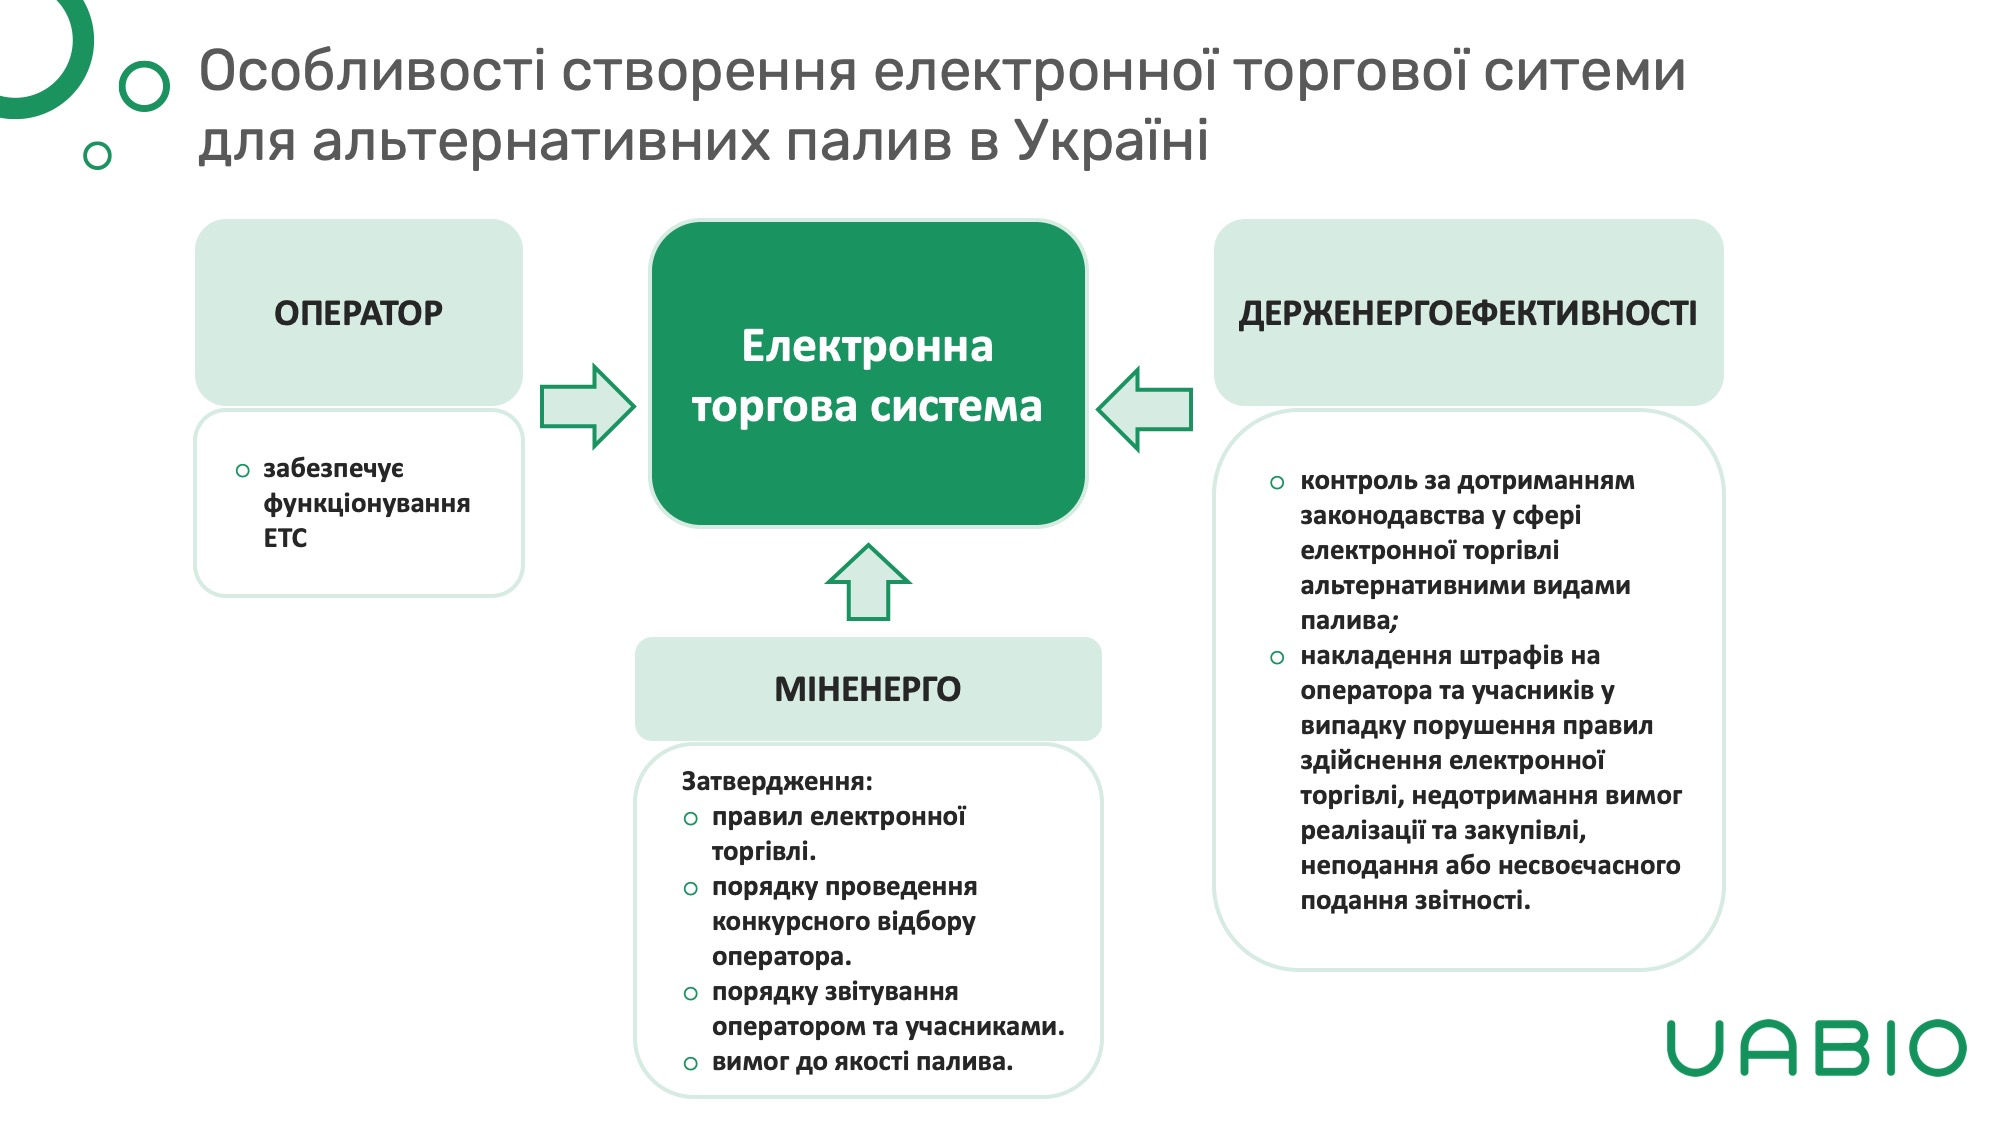 Особливості створення електронної торгової ситеми для альтернативних палив в Україні